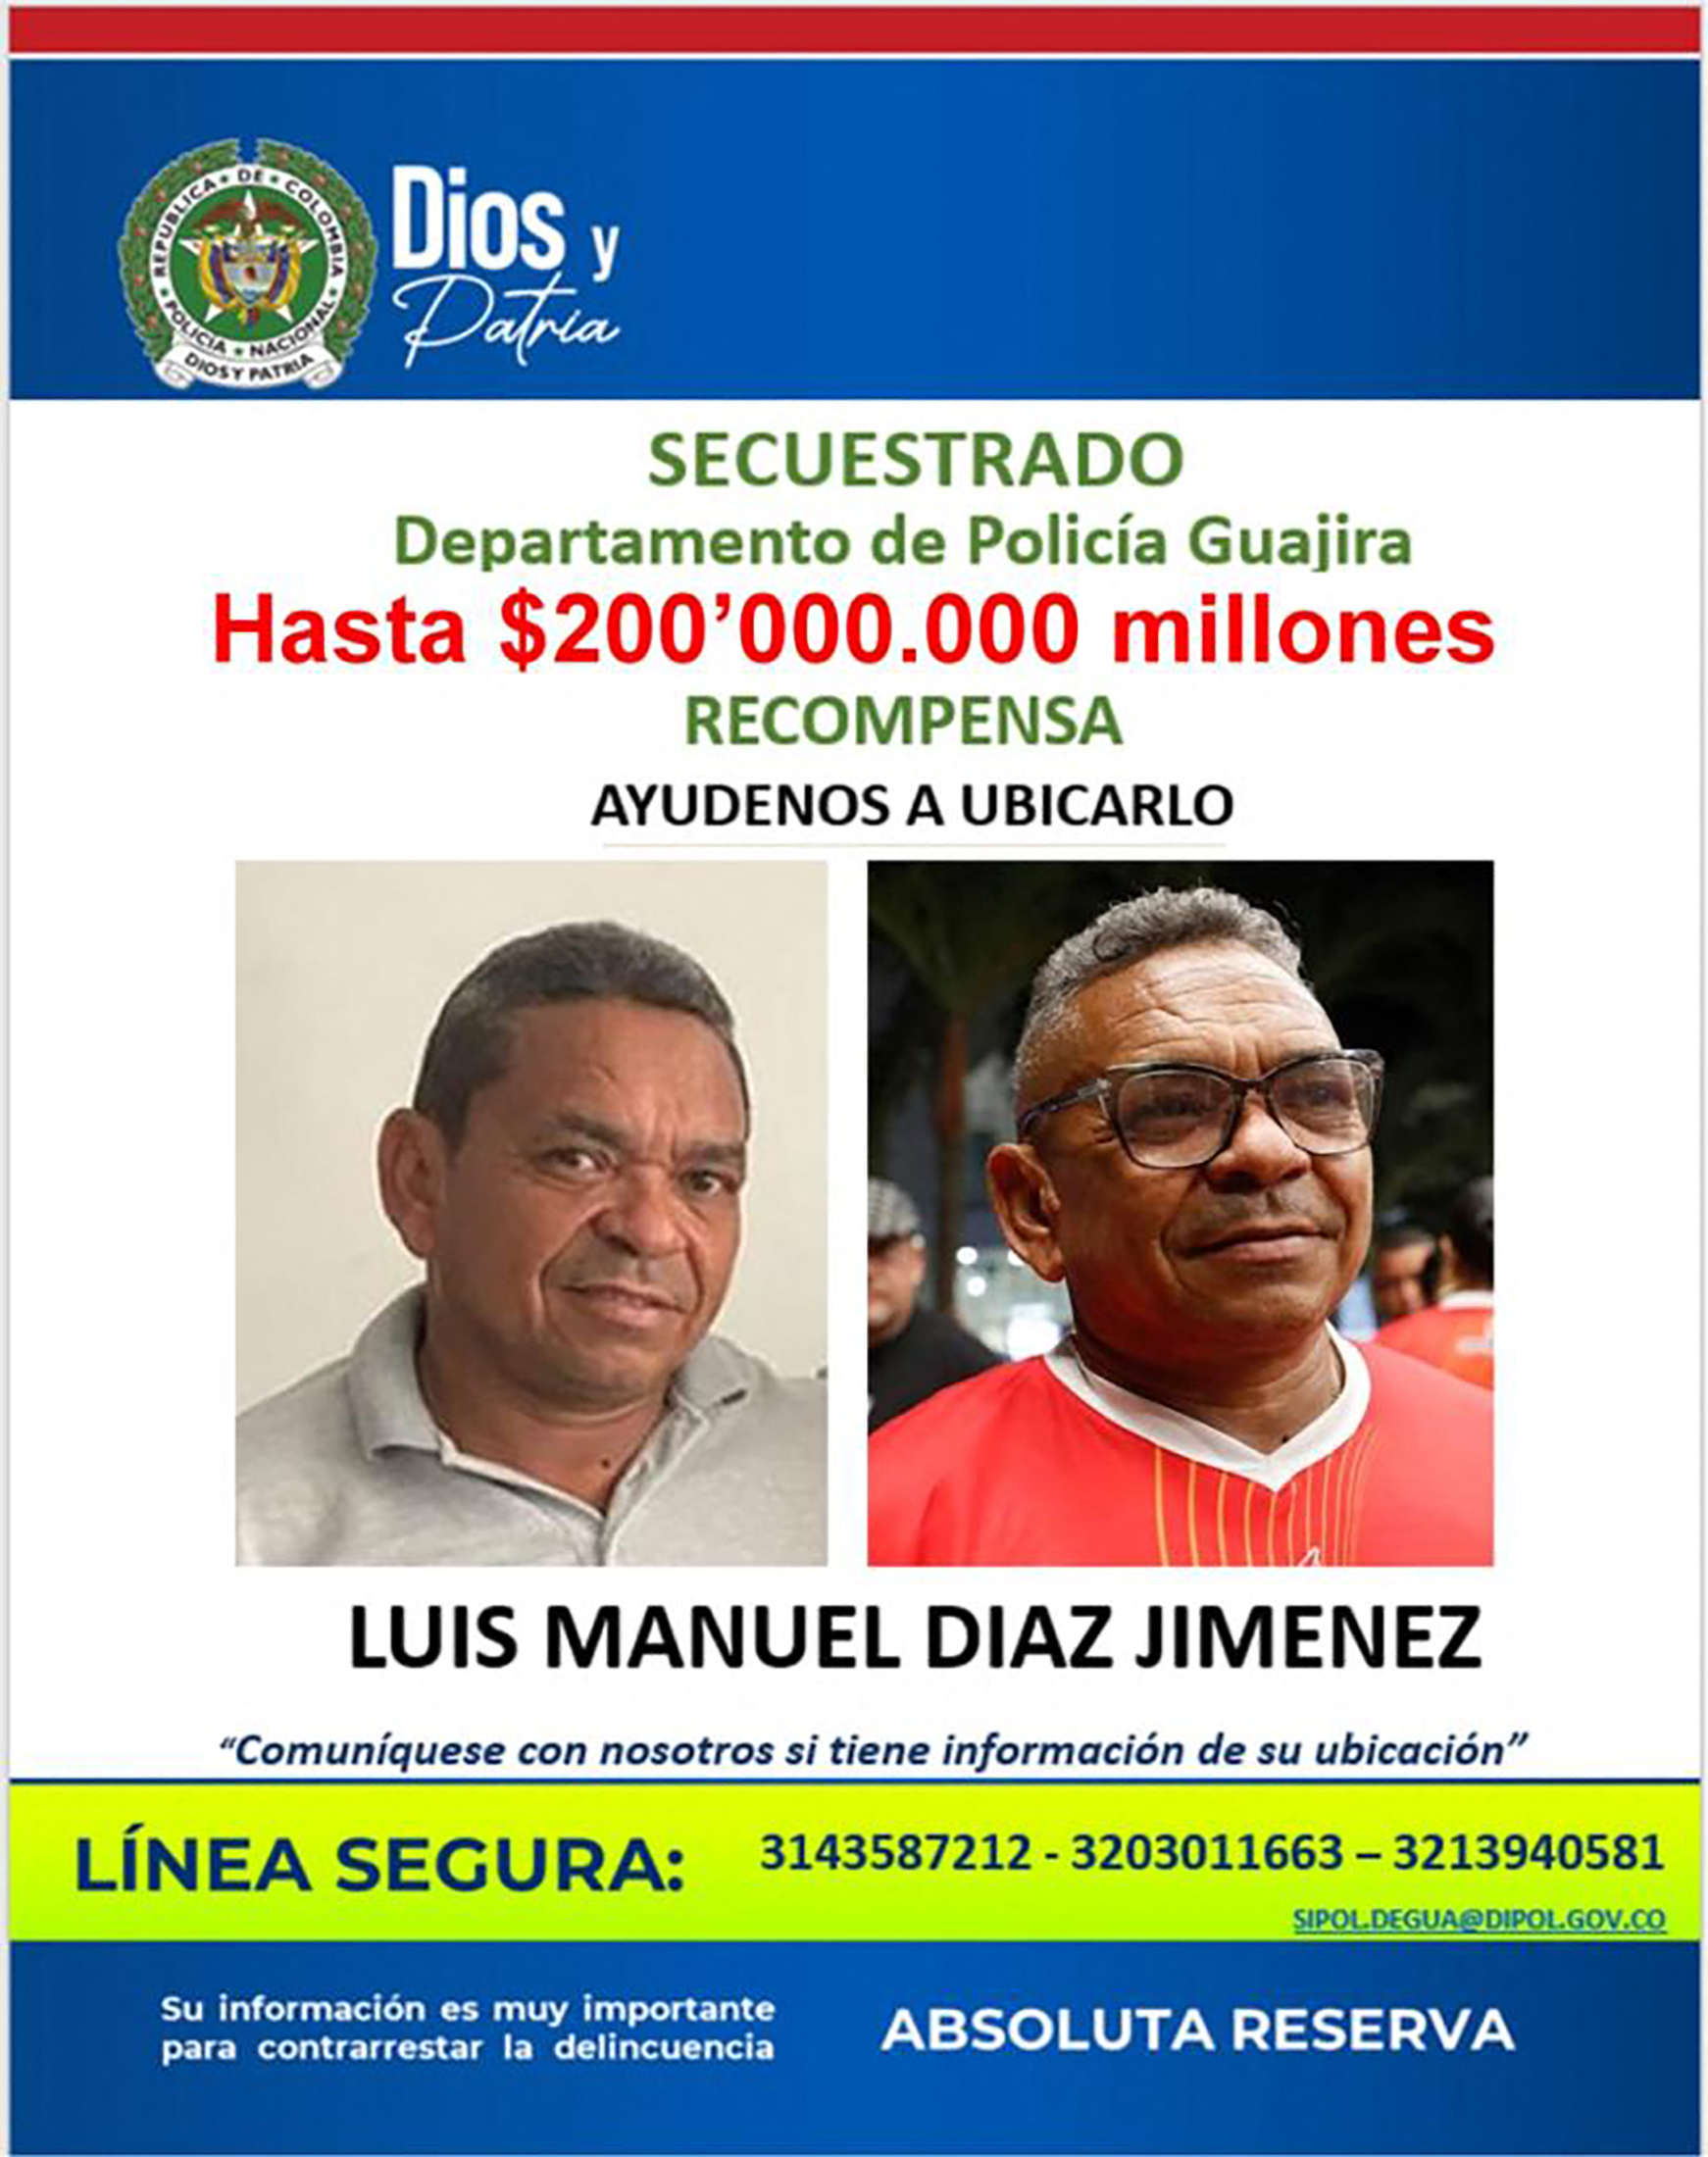 Luis Manuel Diaz wird seit Samstag vermisst, nachdem er in Kolumbien von bewaffneten Männern entführt wurde